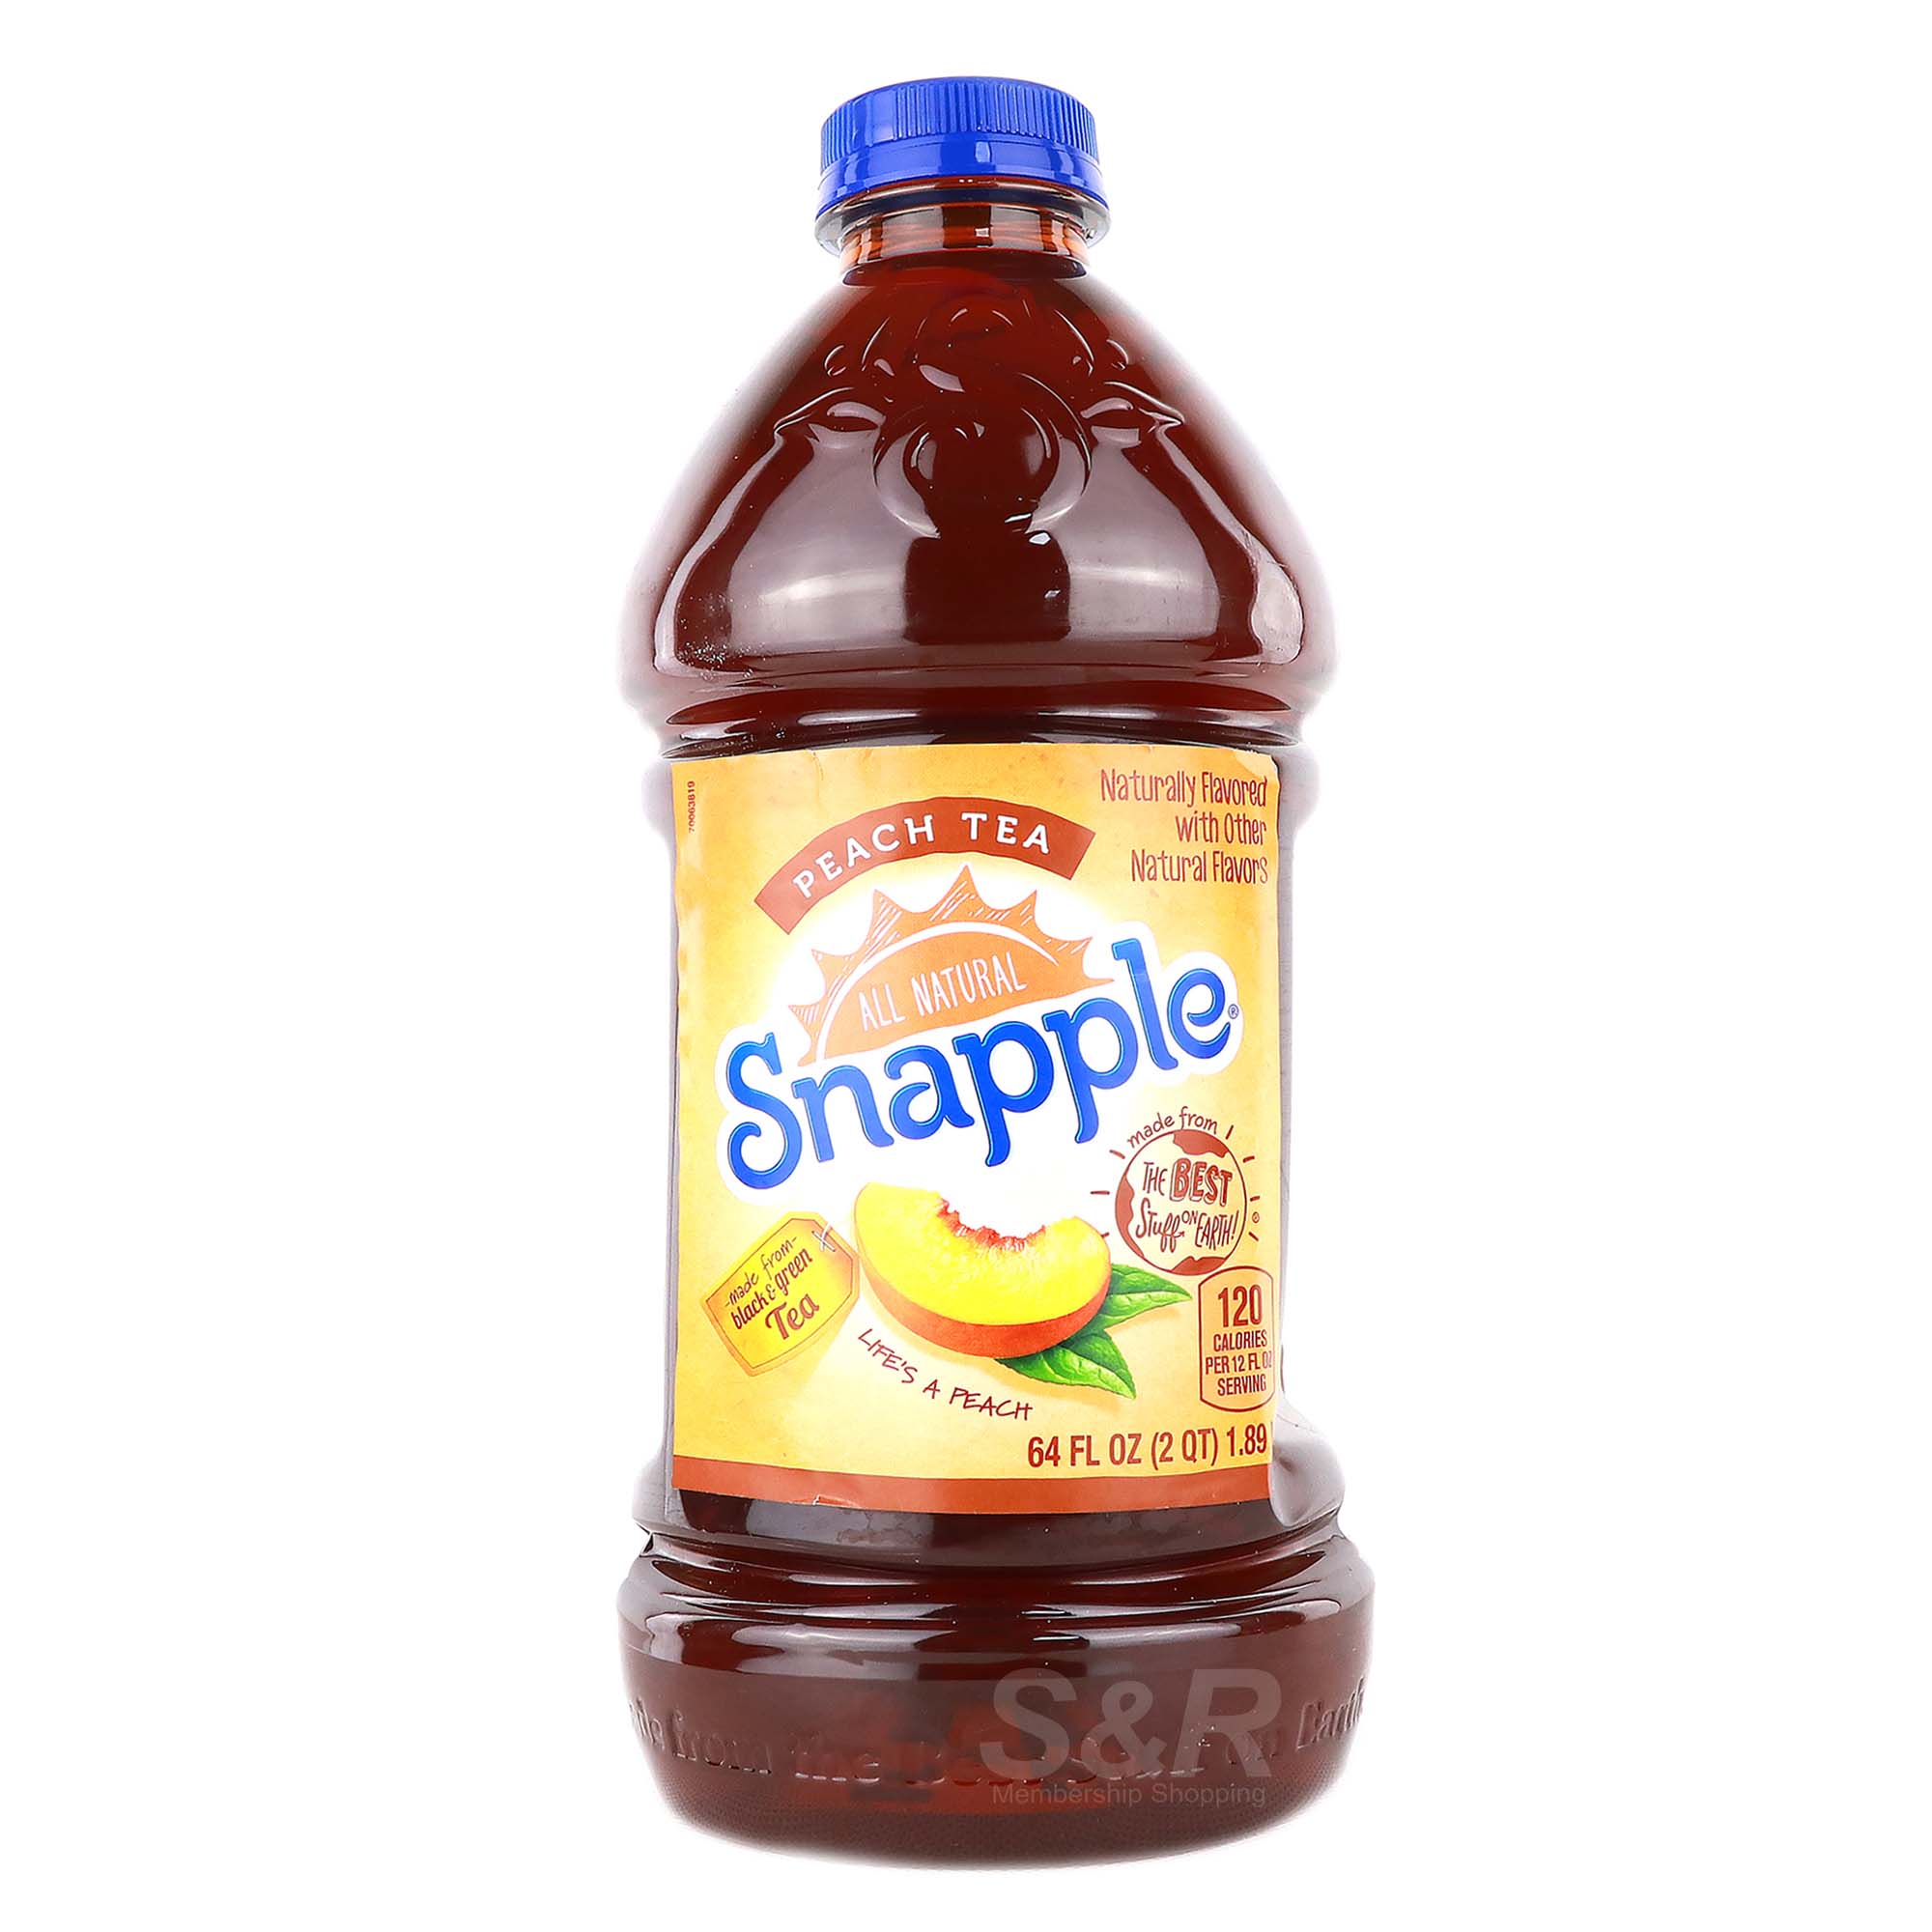 Snapple All Natural Peach Flavor Tea 1.89L